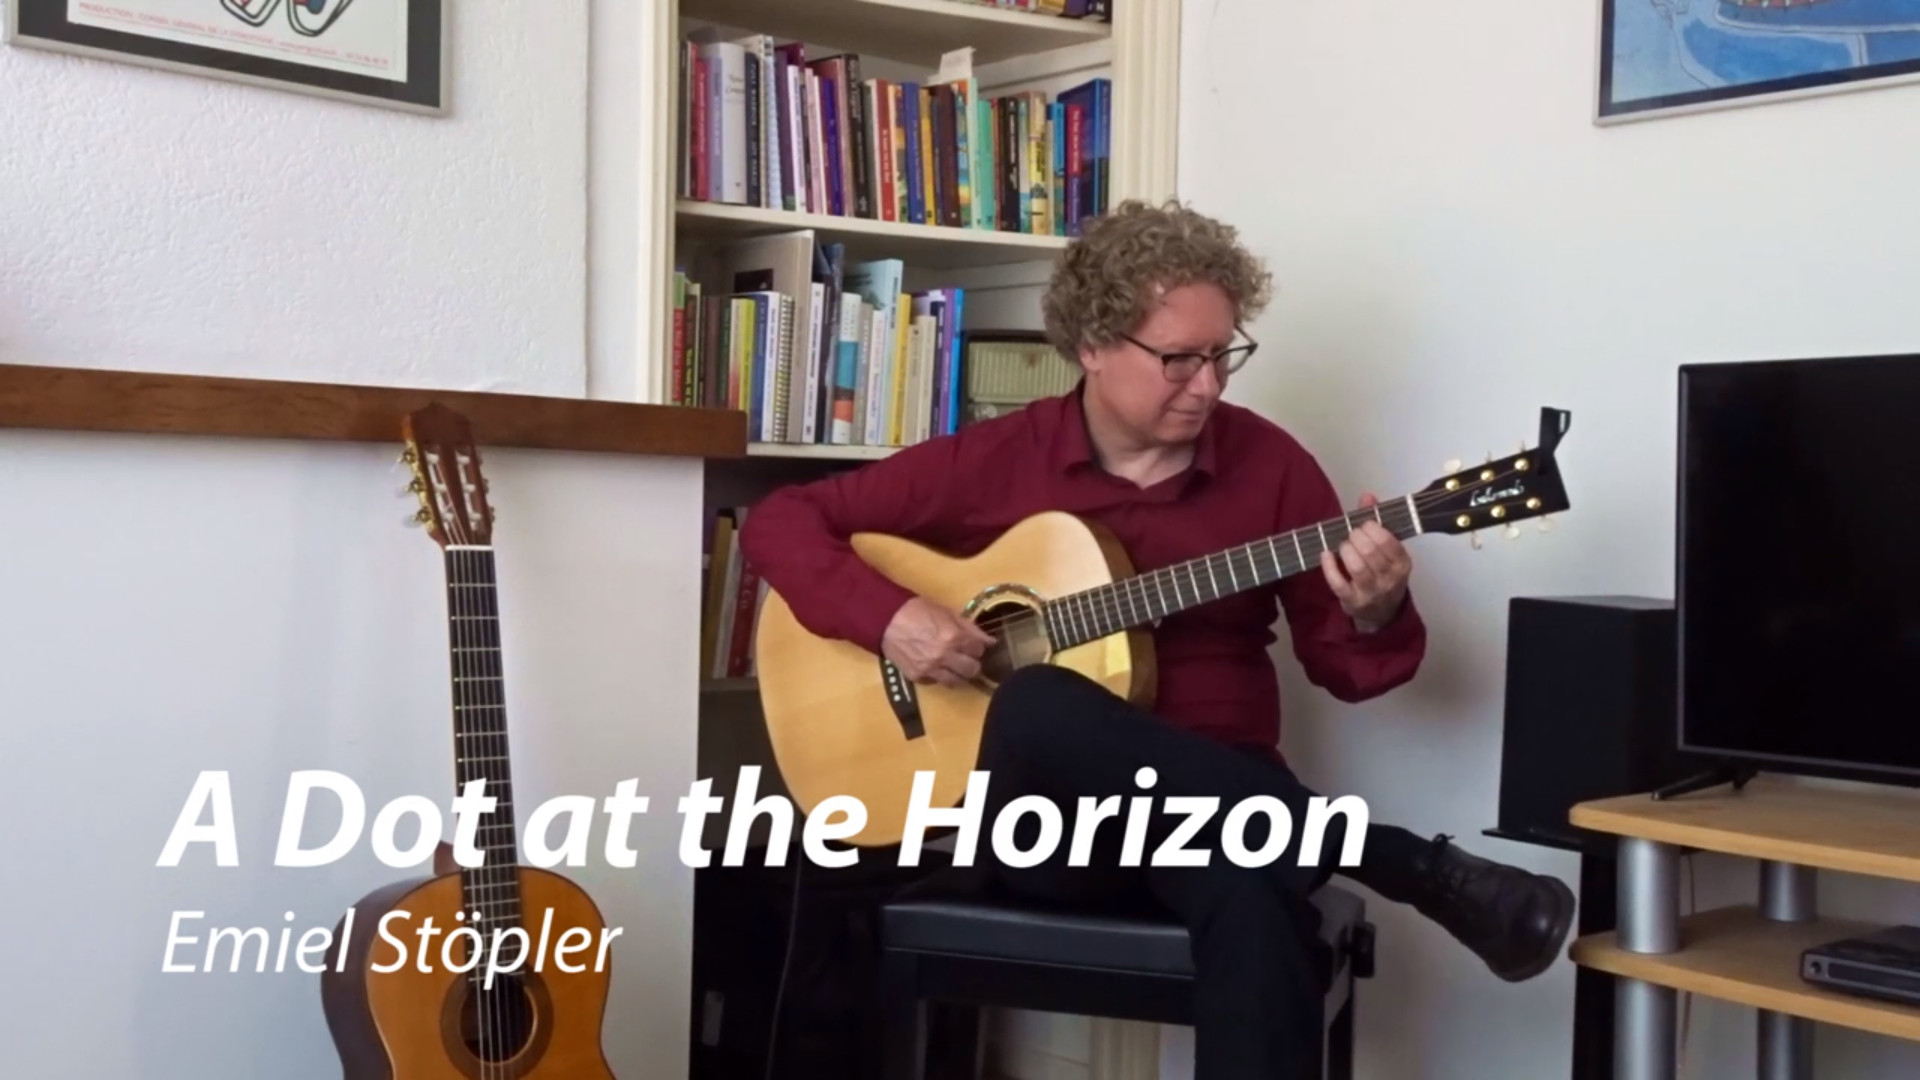 A dot at the horizon - emiel stopler, guitar